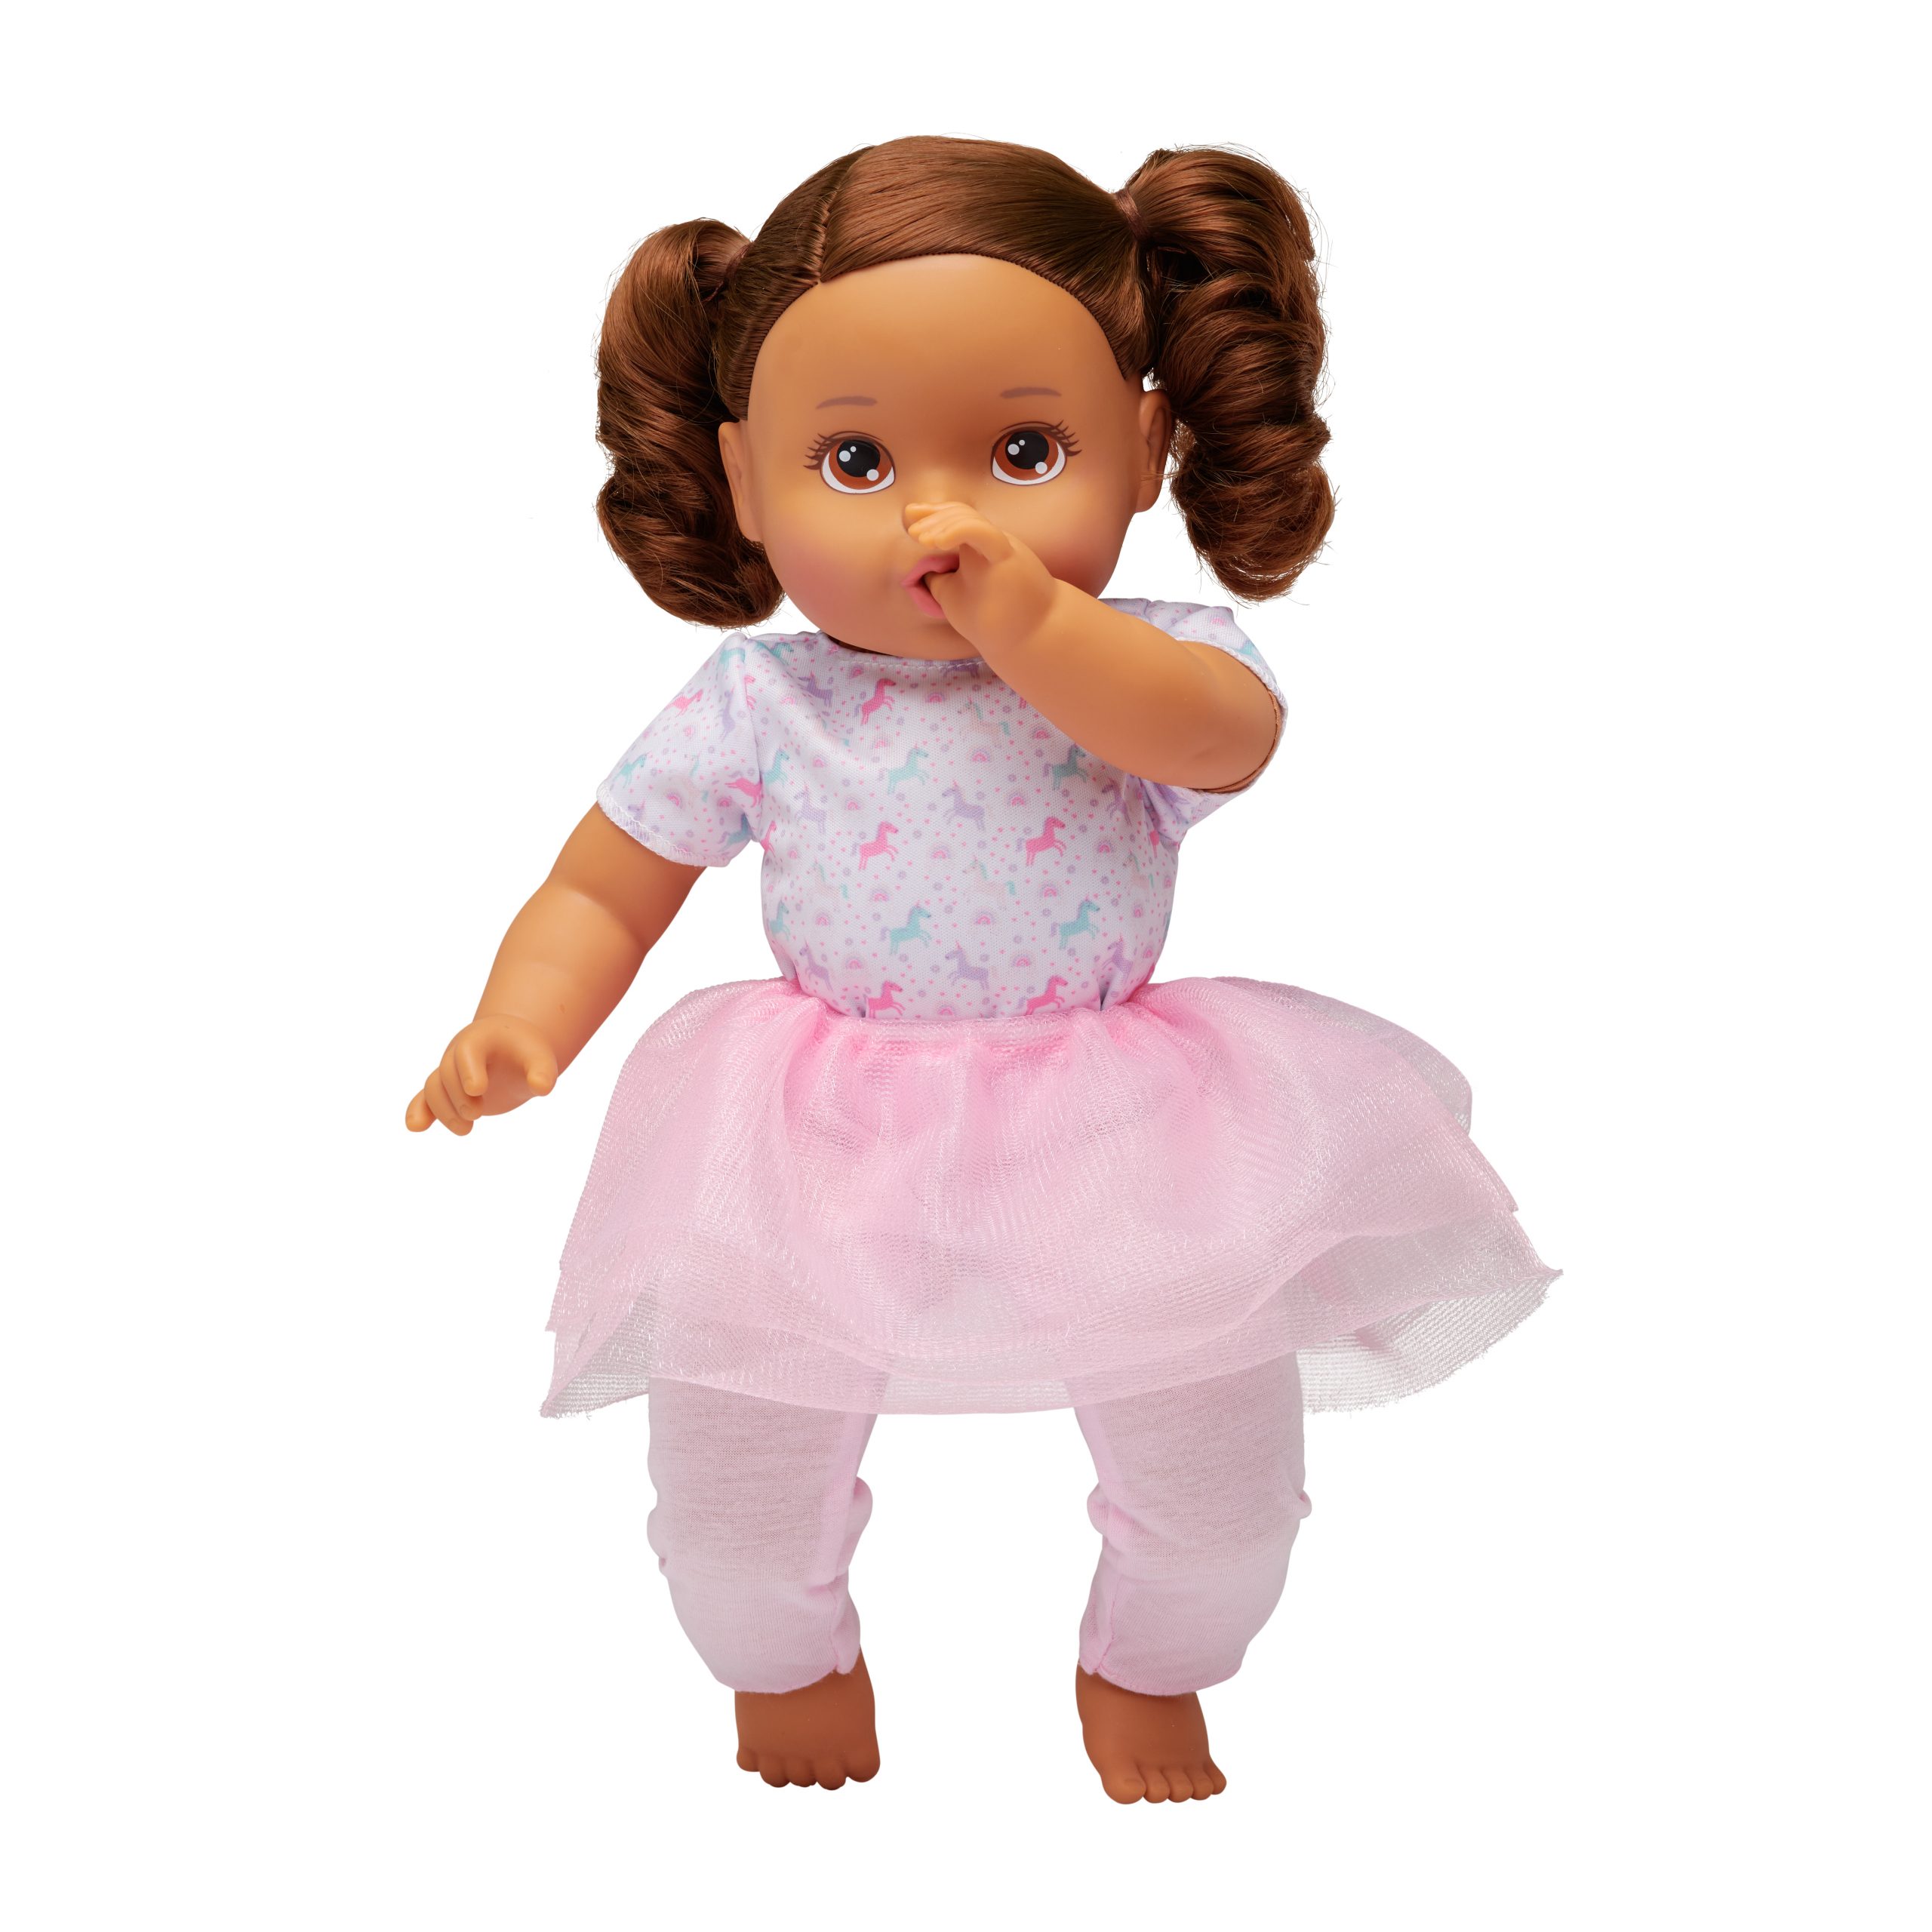 14" My Sweet Toddler Girl Doll Brunette - Brown Eyes